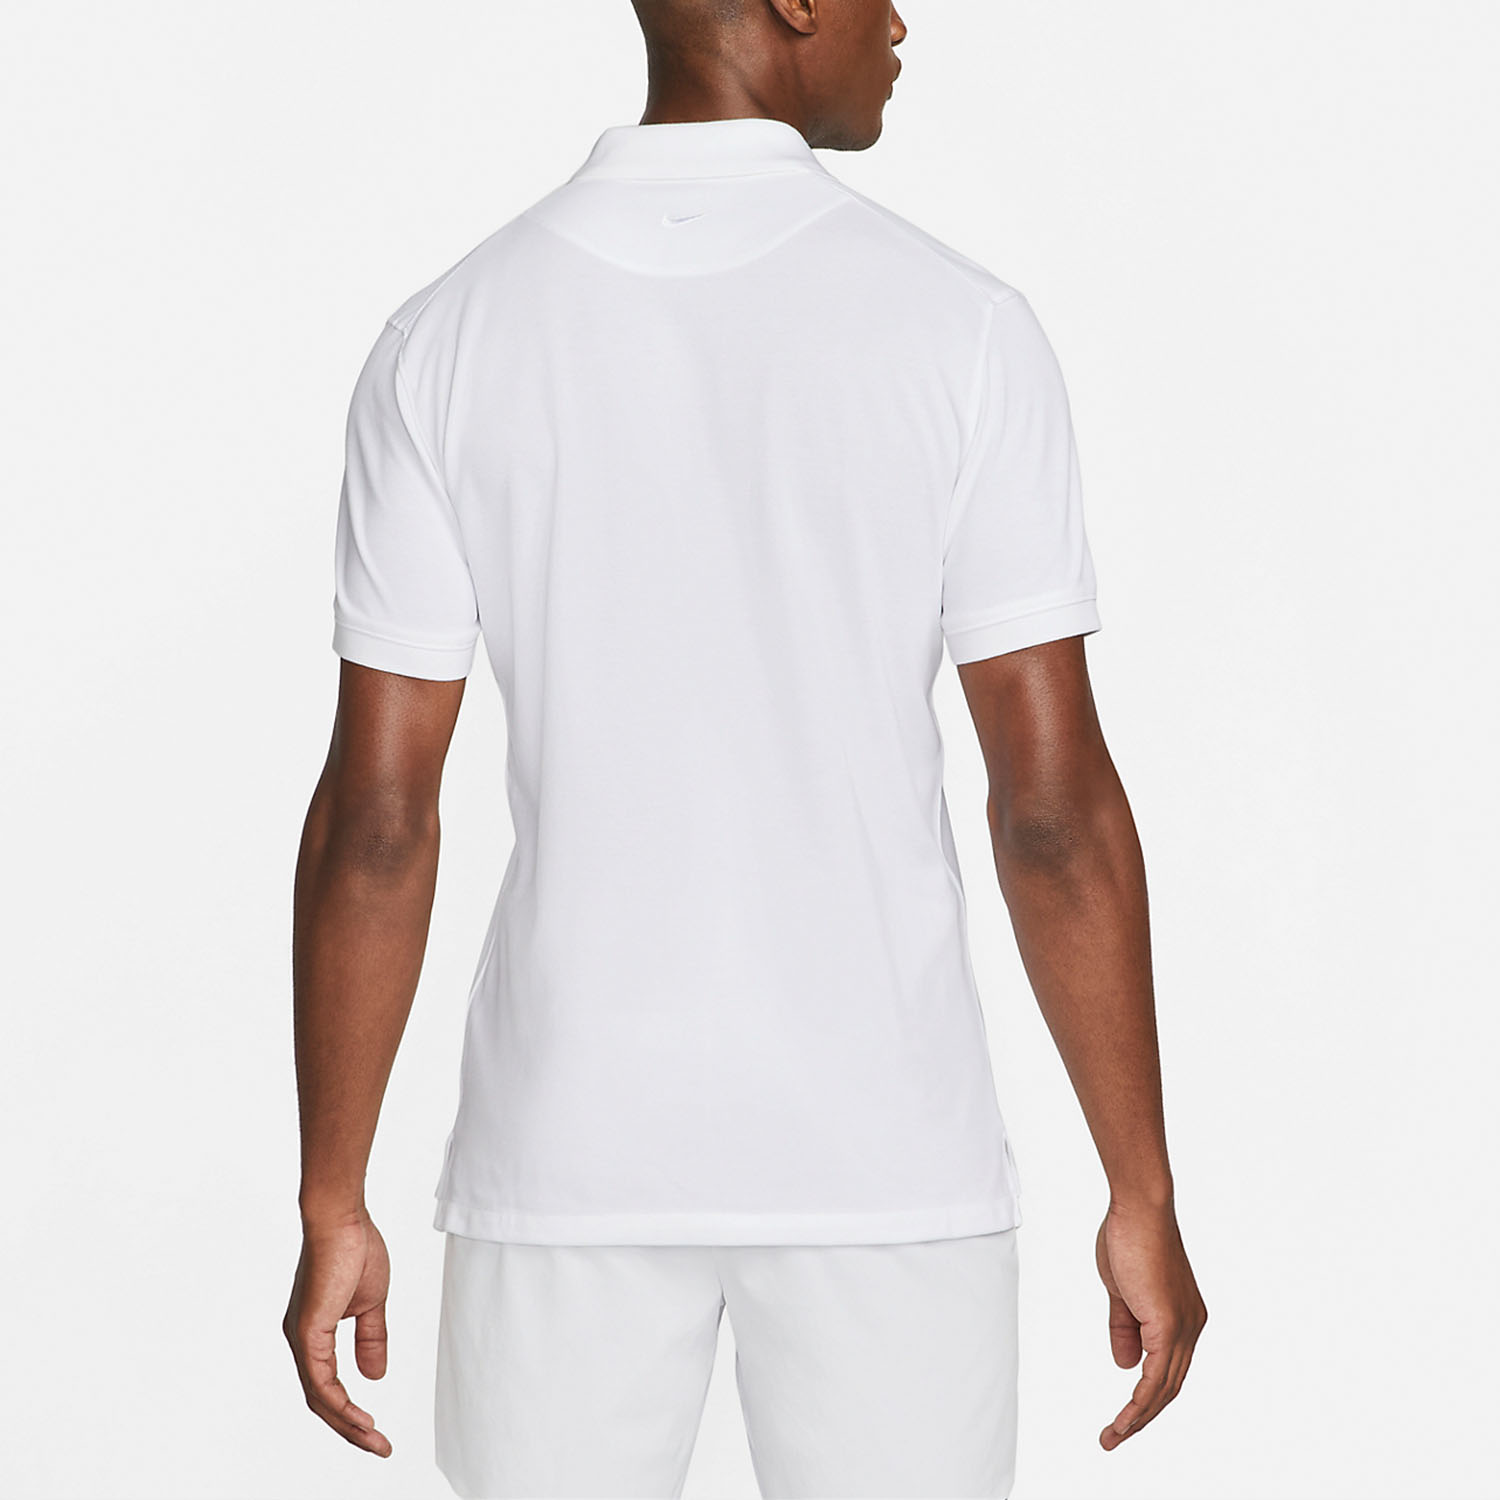 Nike Rafa Logo Men's Tennis Polo - White/Black